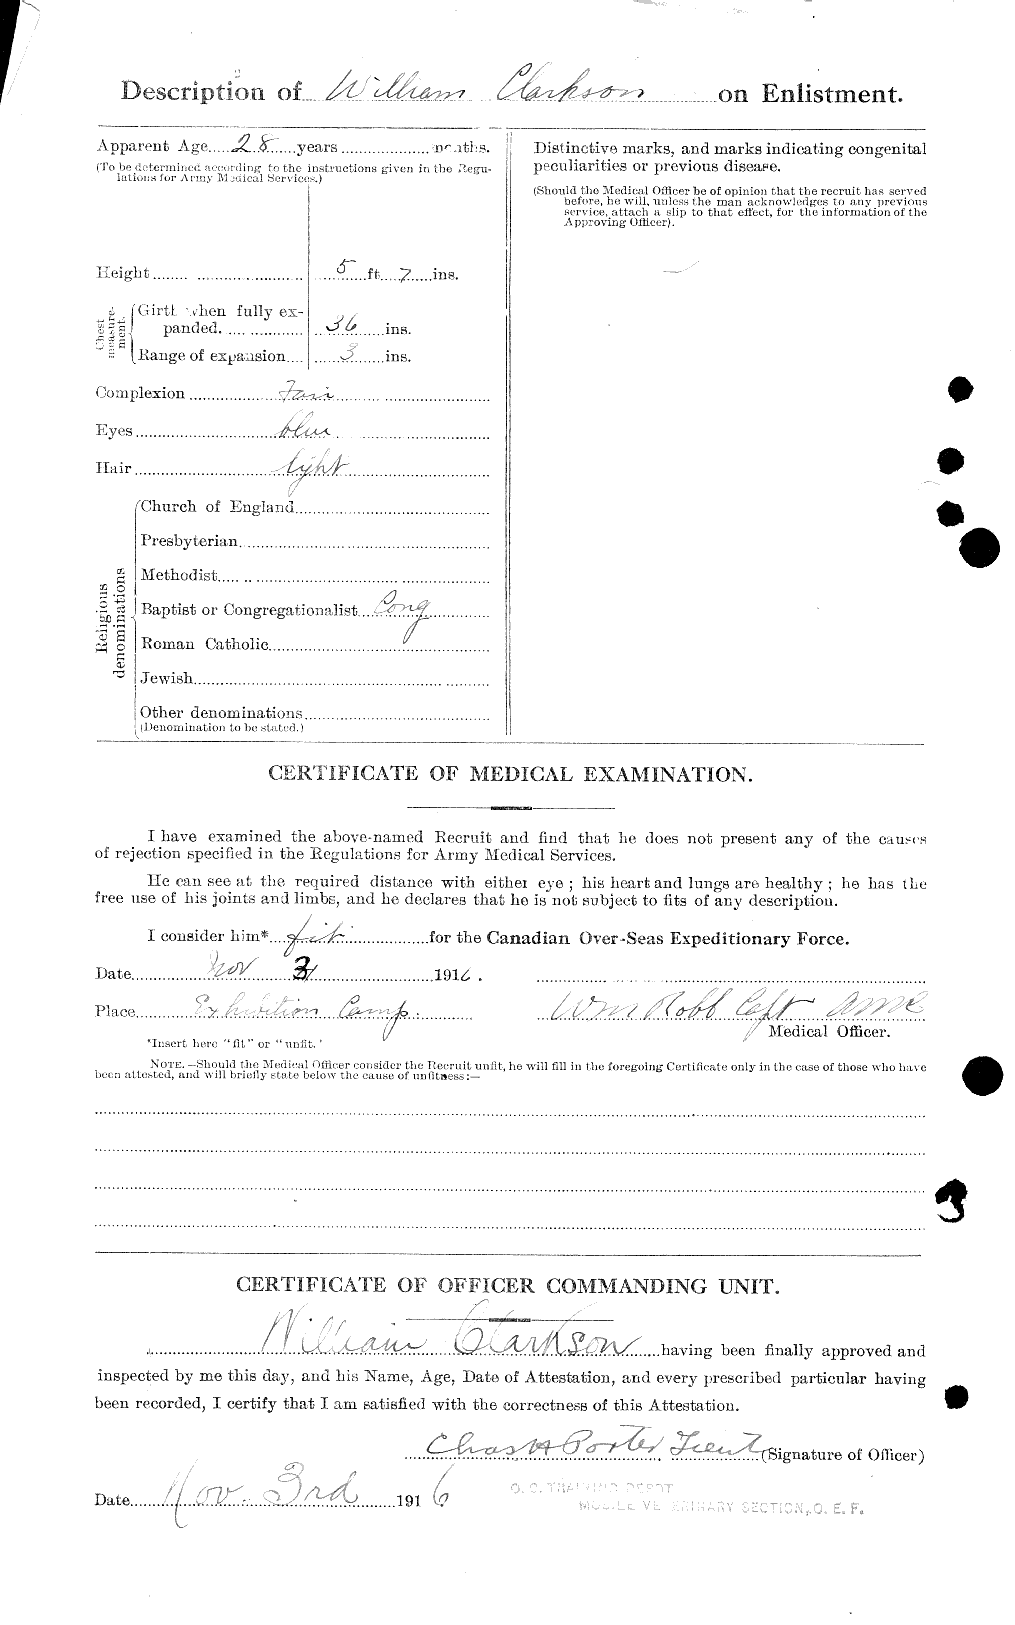 Dossiers du Personnel de la Première Guerre mondiale - CEC 019019b